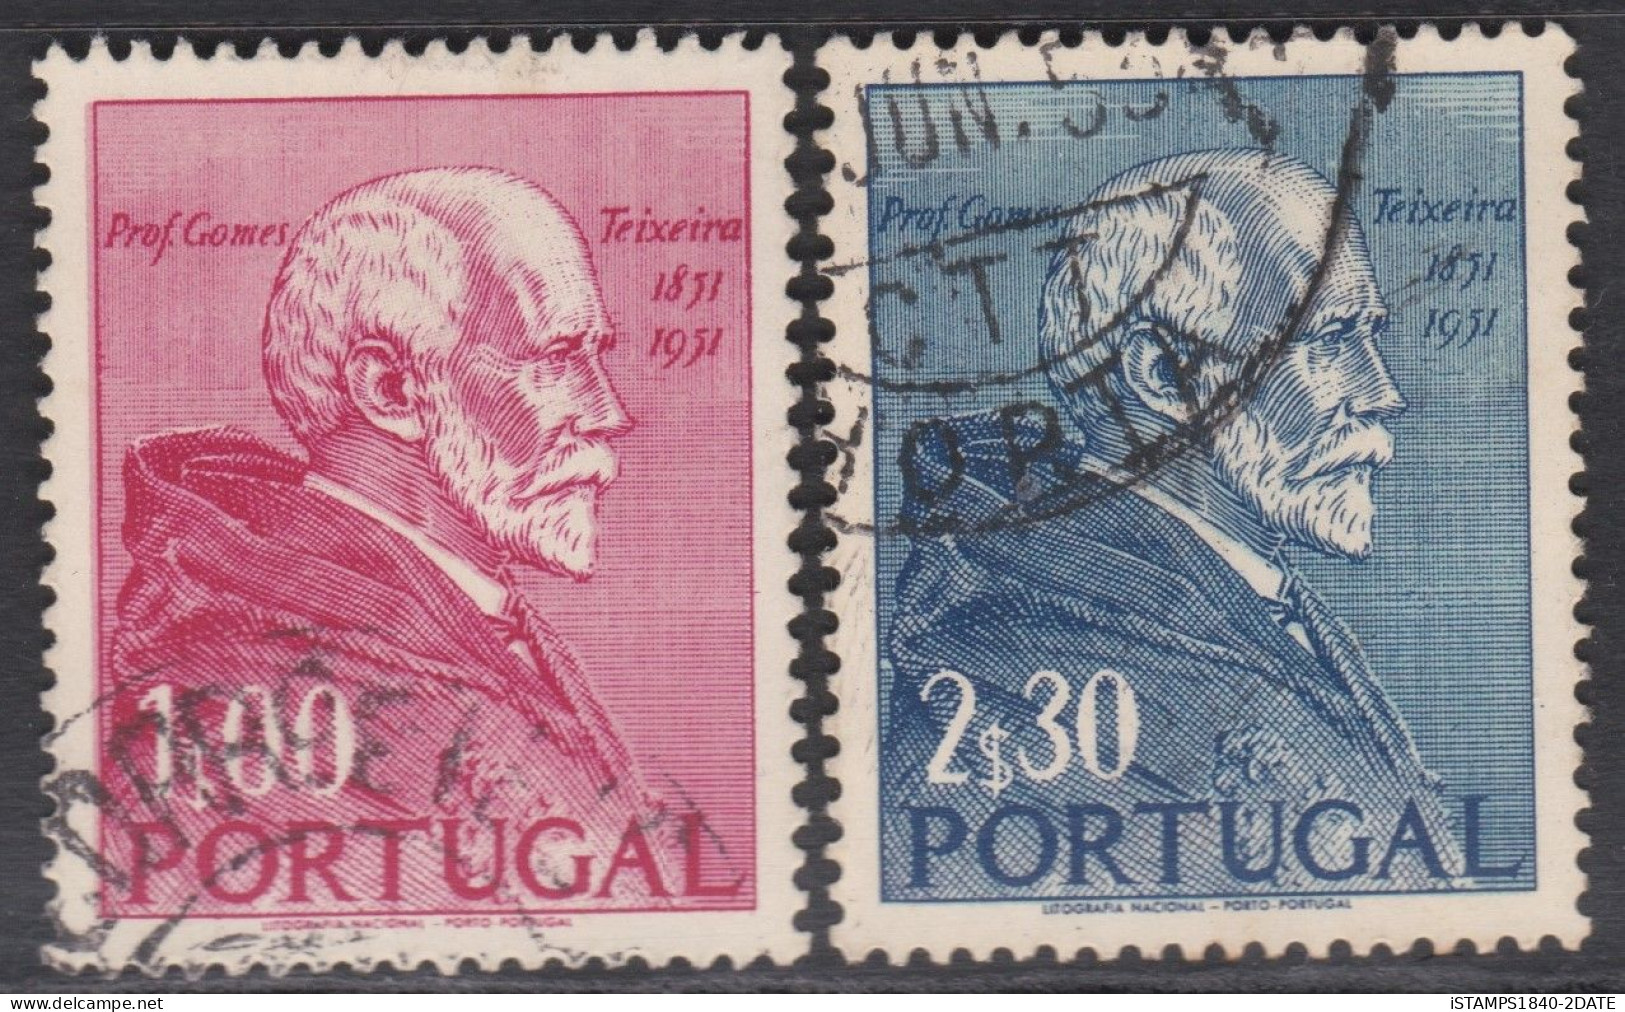 00486/ Portugal 1952 Sg1069/70 Fine Used Set Of 2 Birth Centenary Of Professor Gomes Cv £7 - Nuovi